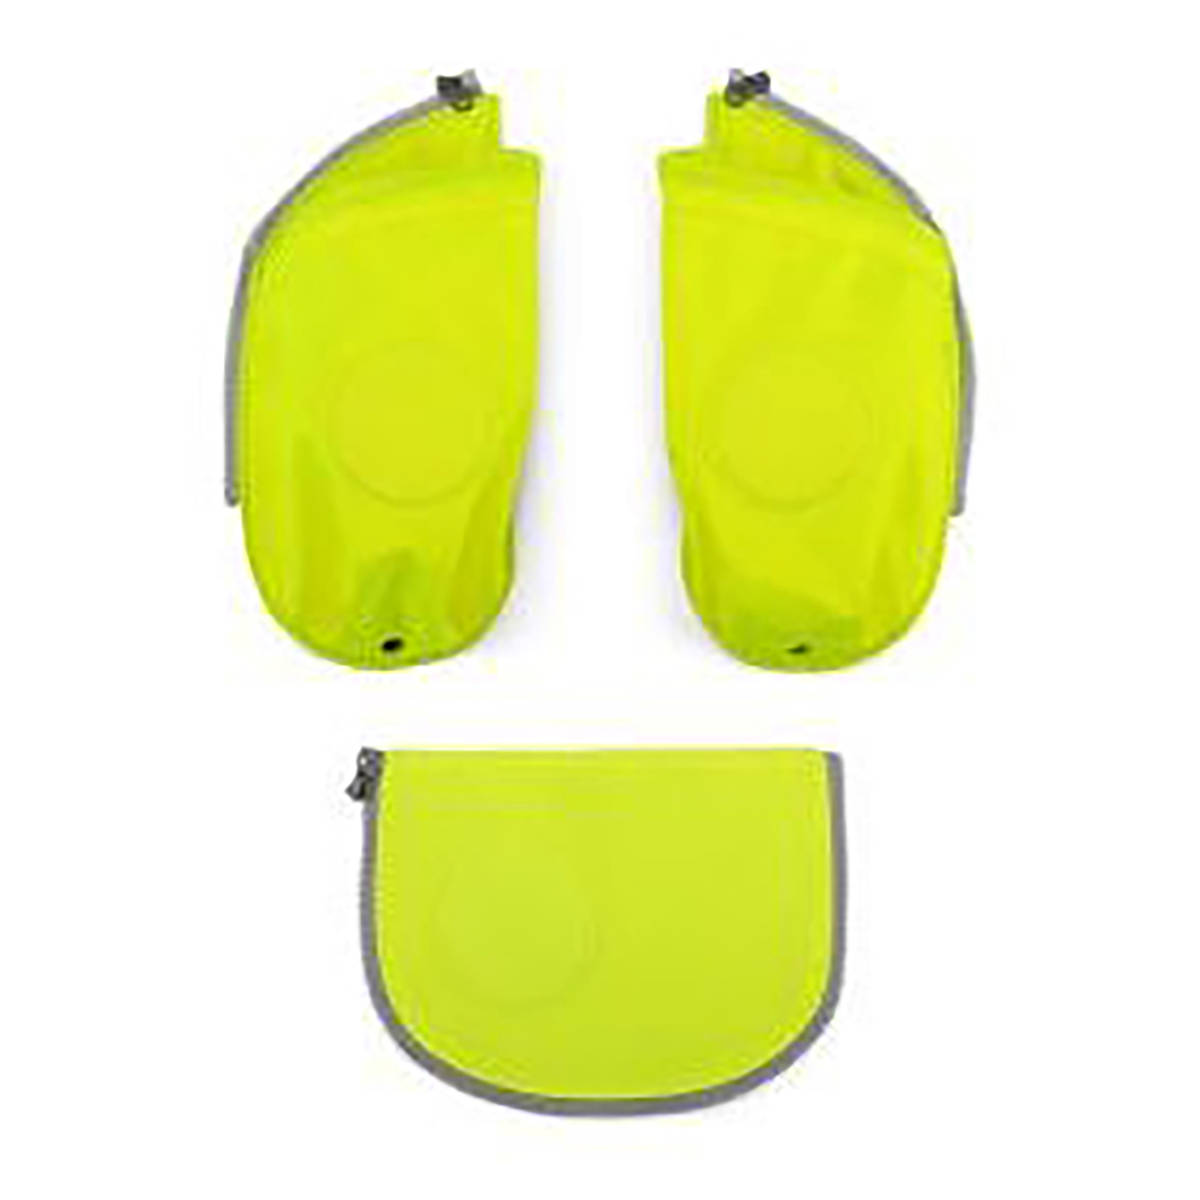 Ergobag Cubo Sicherheitsset mit Flaschenhalter gelb Frontansicht